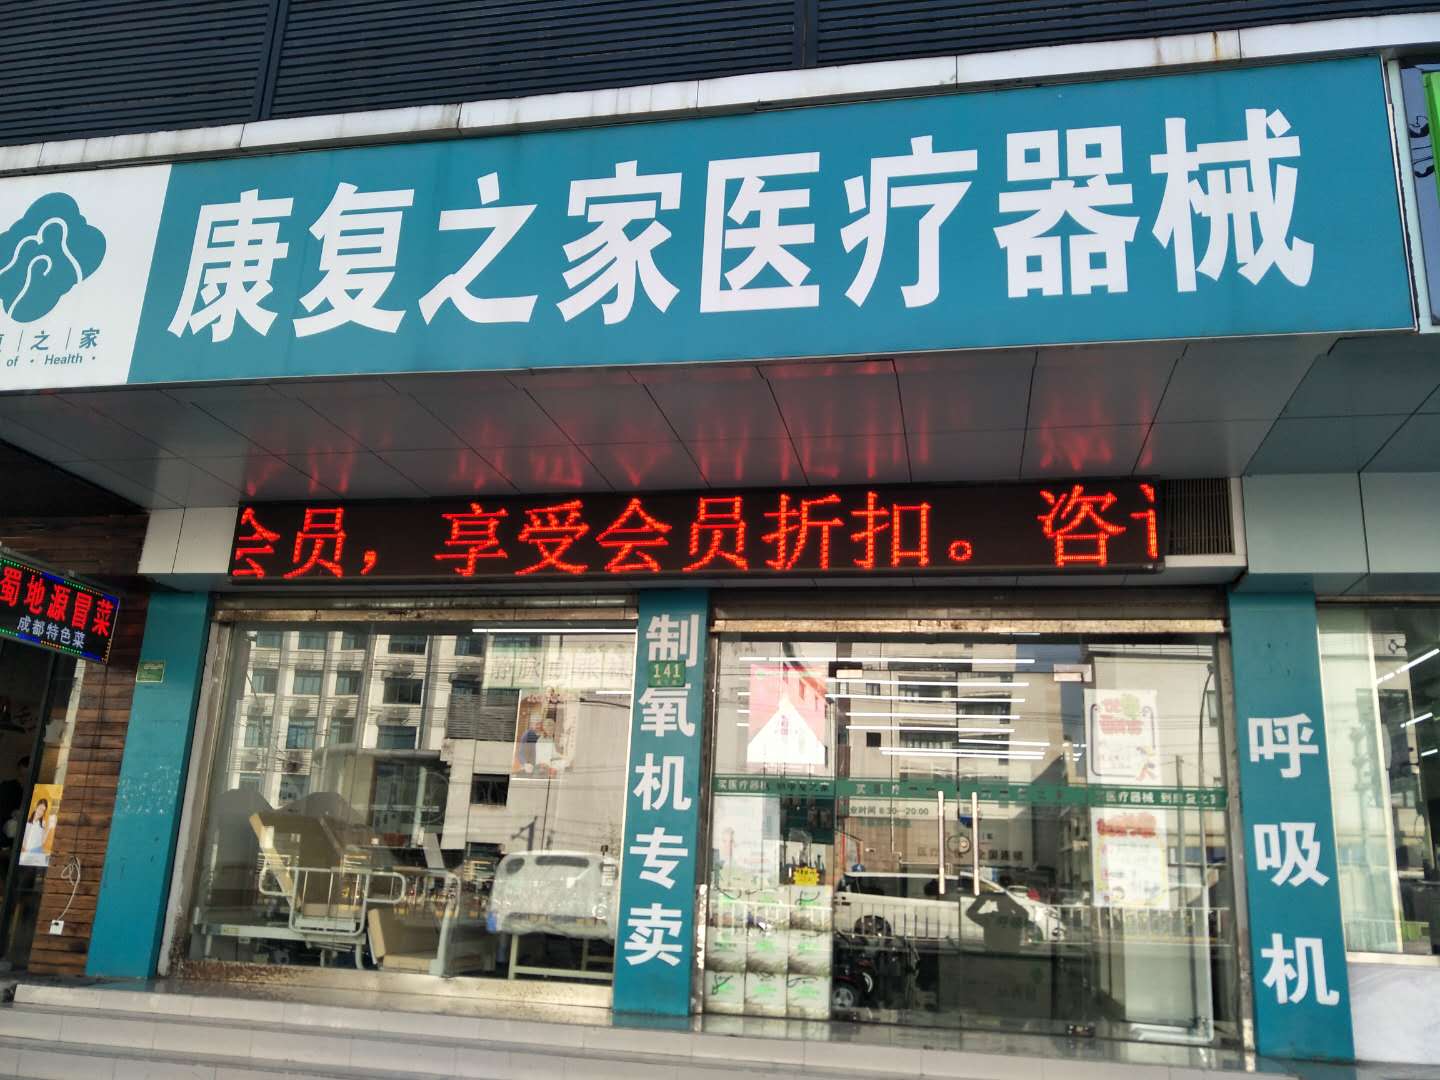 上海海宁路店